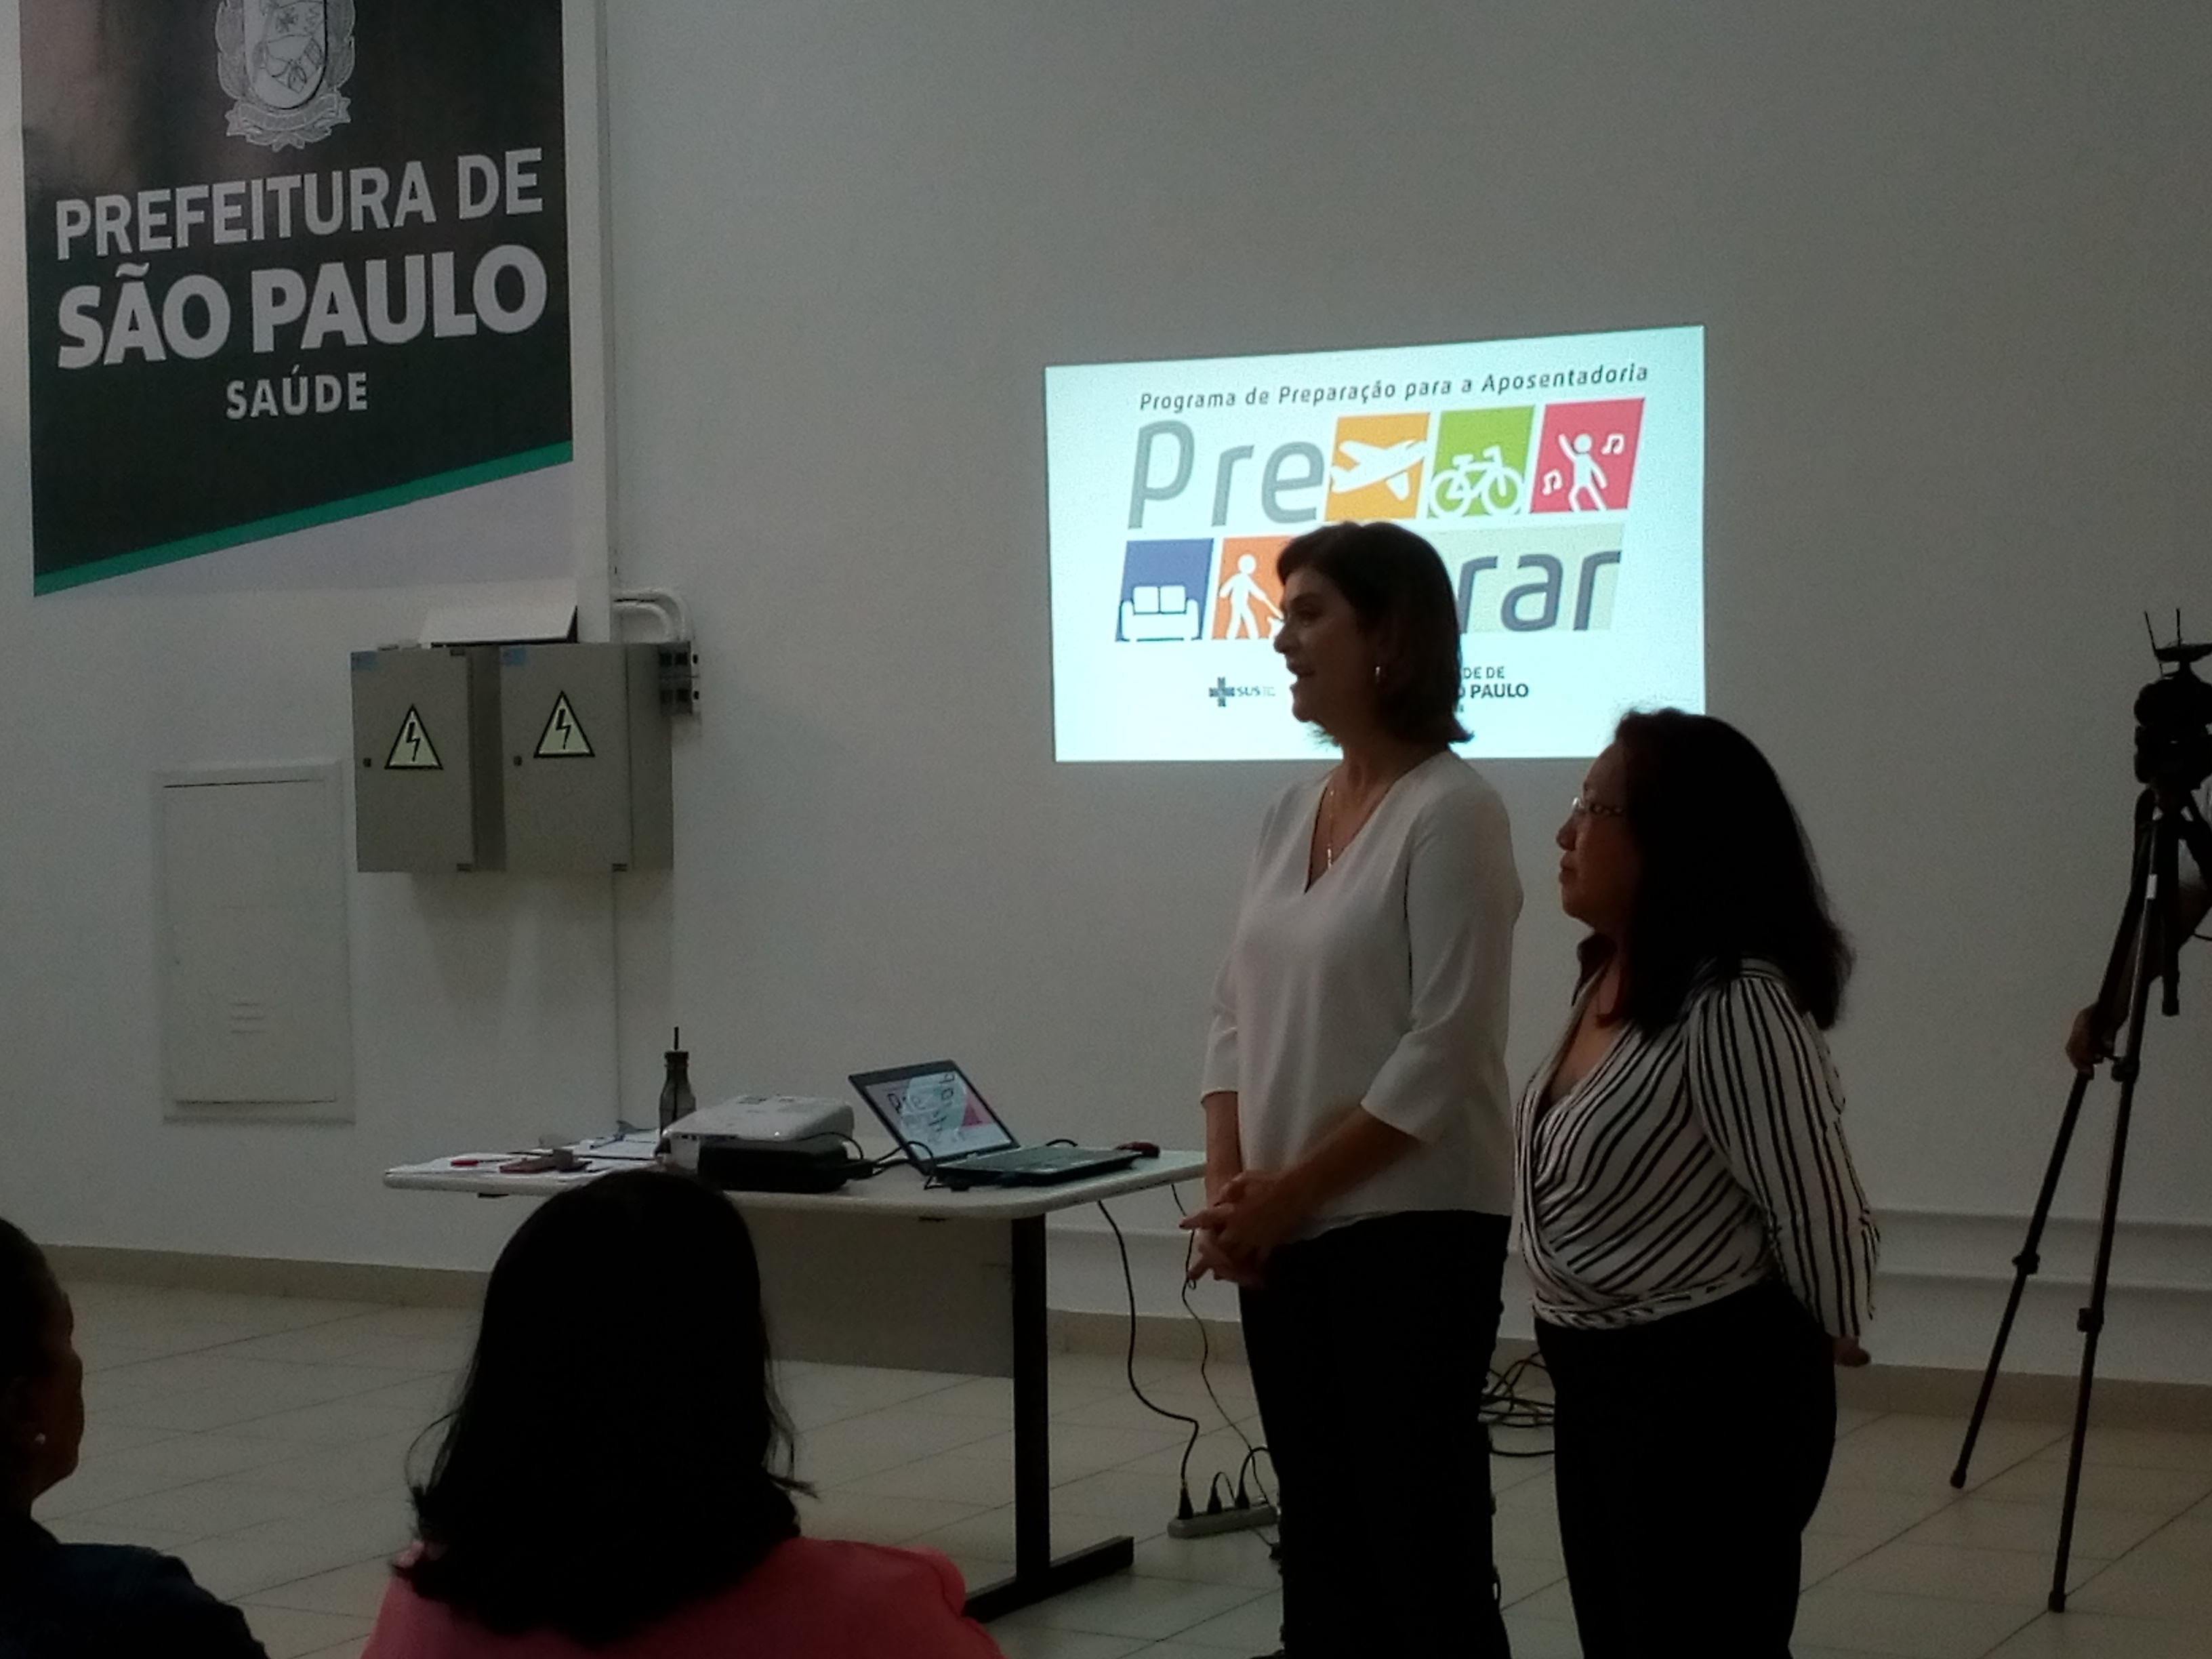 # Paracegover Na imagem estão Jane Abraão e Gilse Assami lado a lado conversando com os participantes do evento